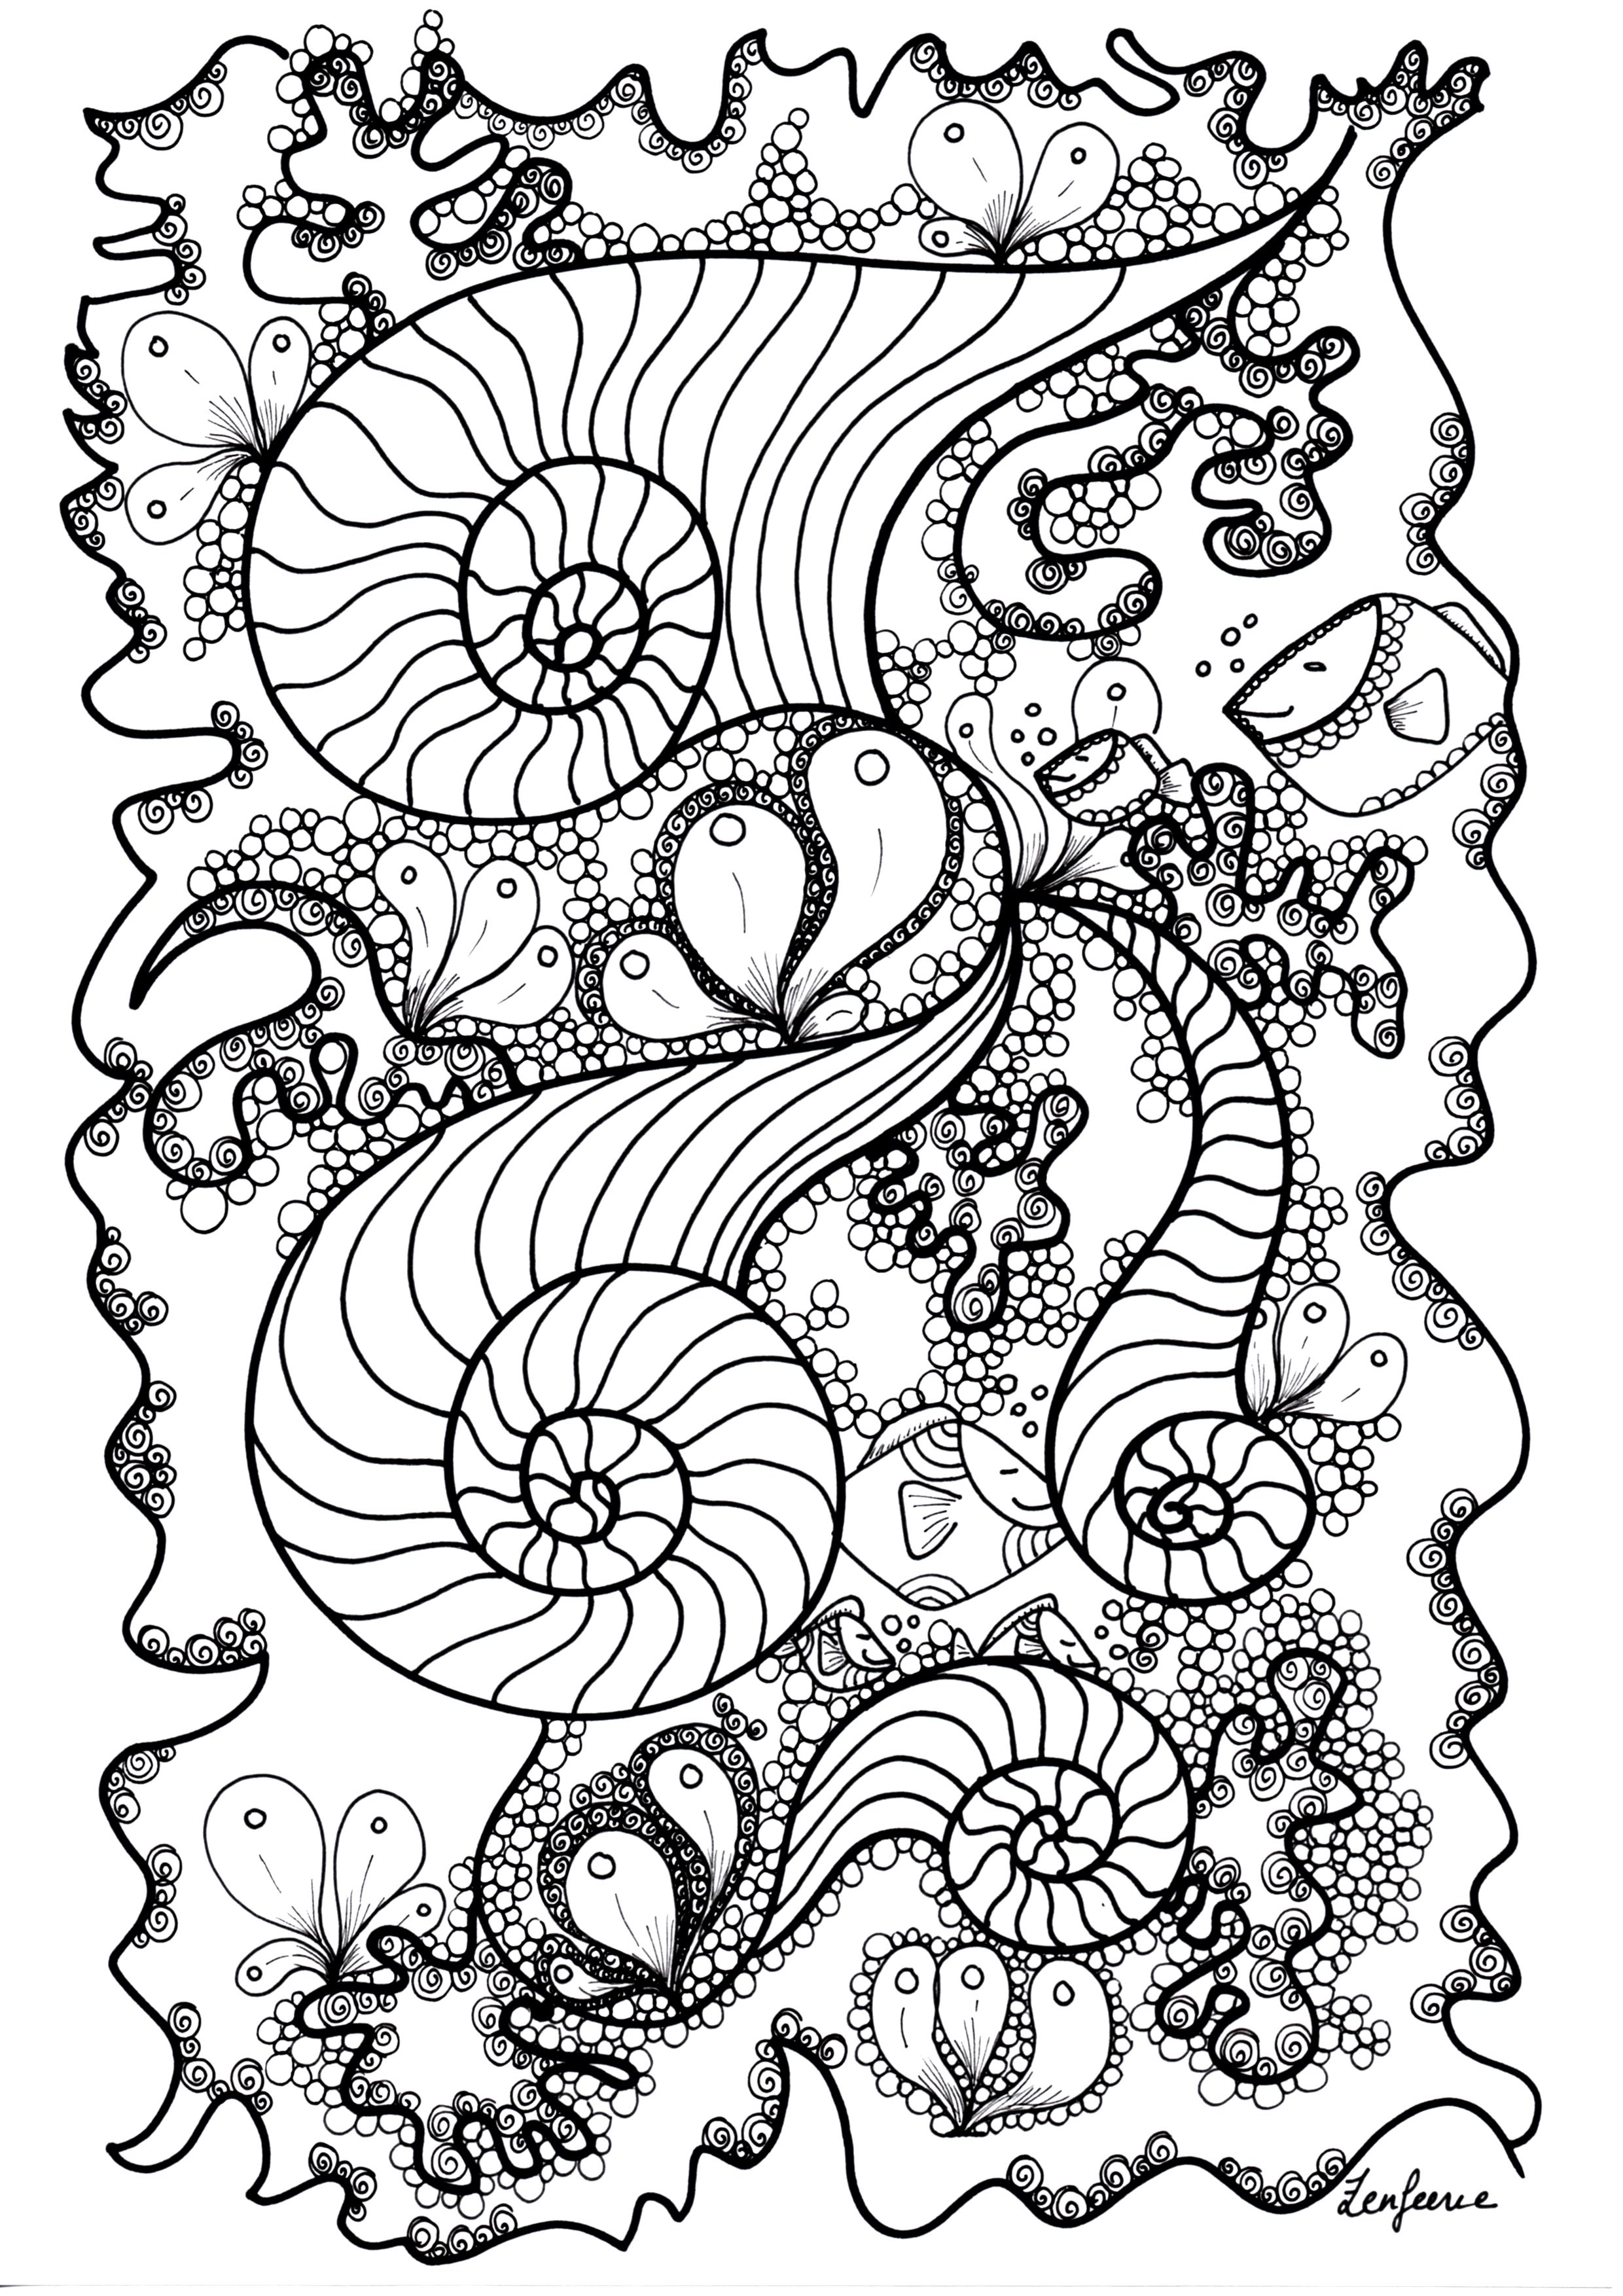 Dessin original Zentangle, à colorier, par Cathy M